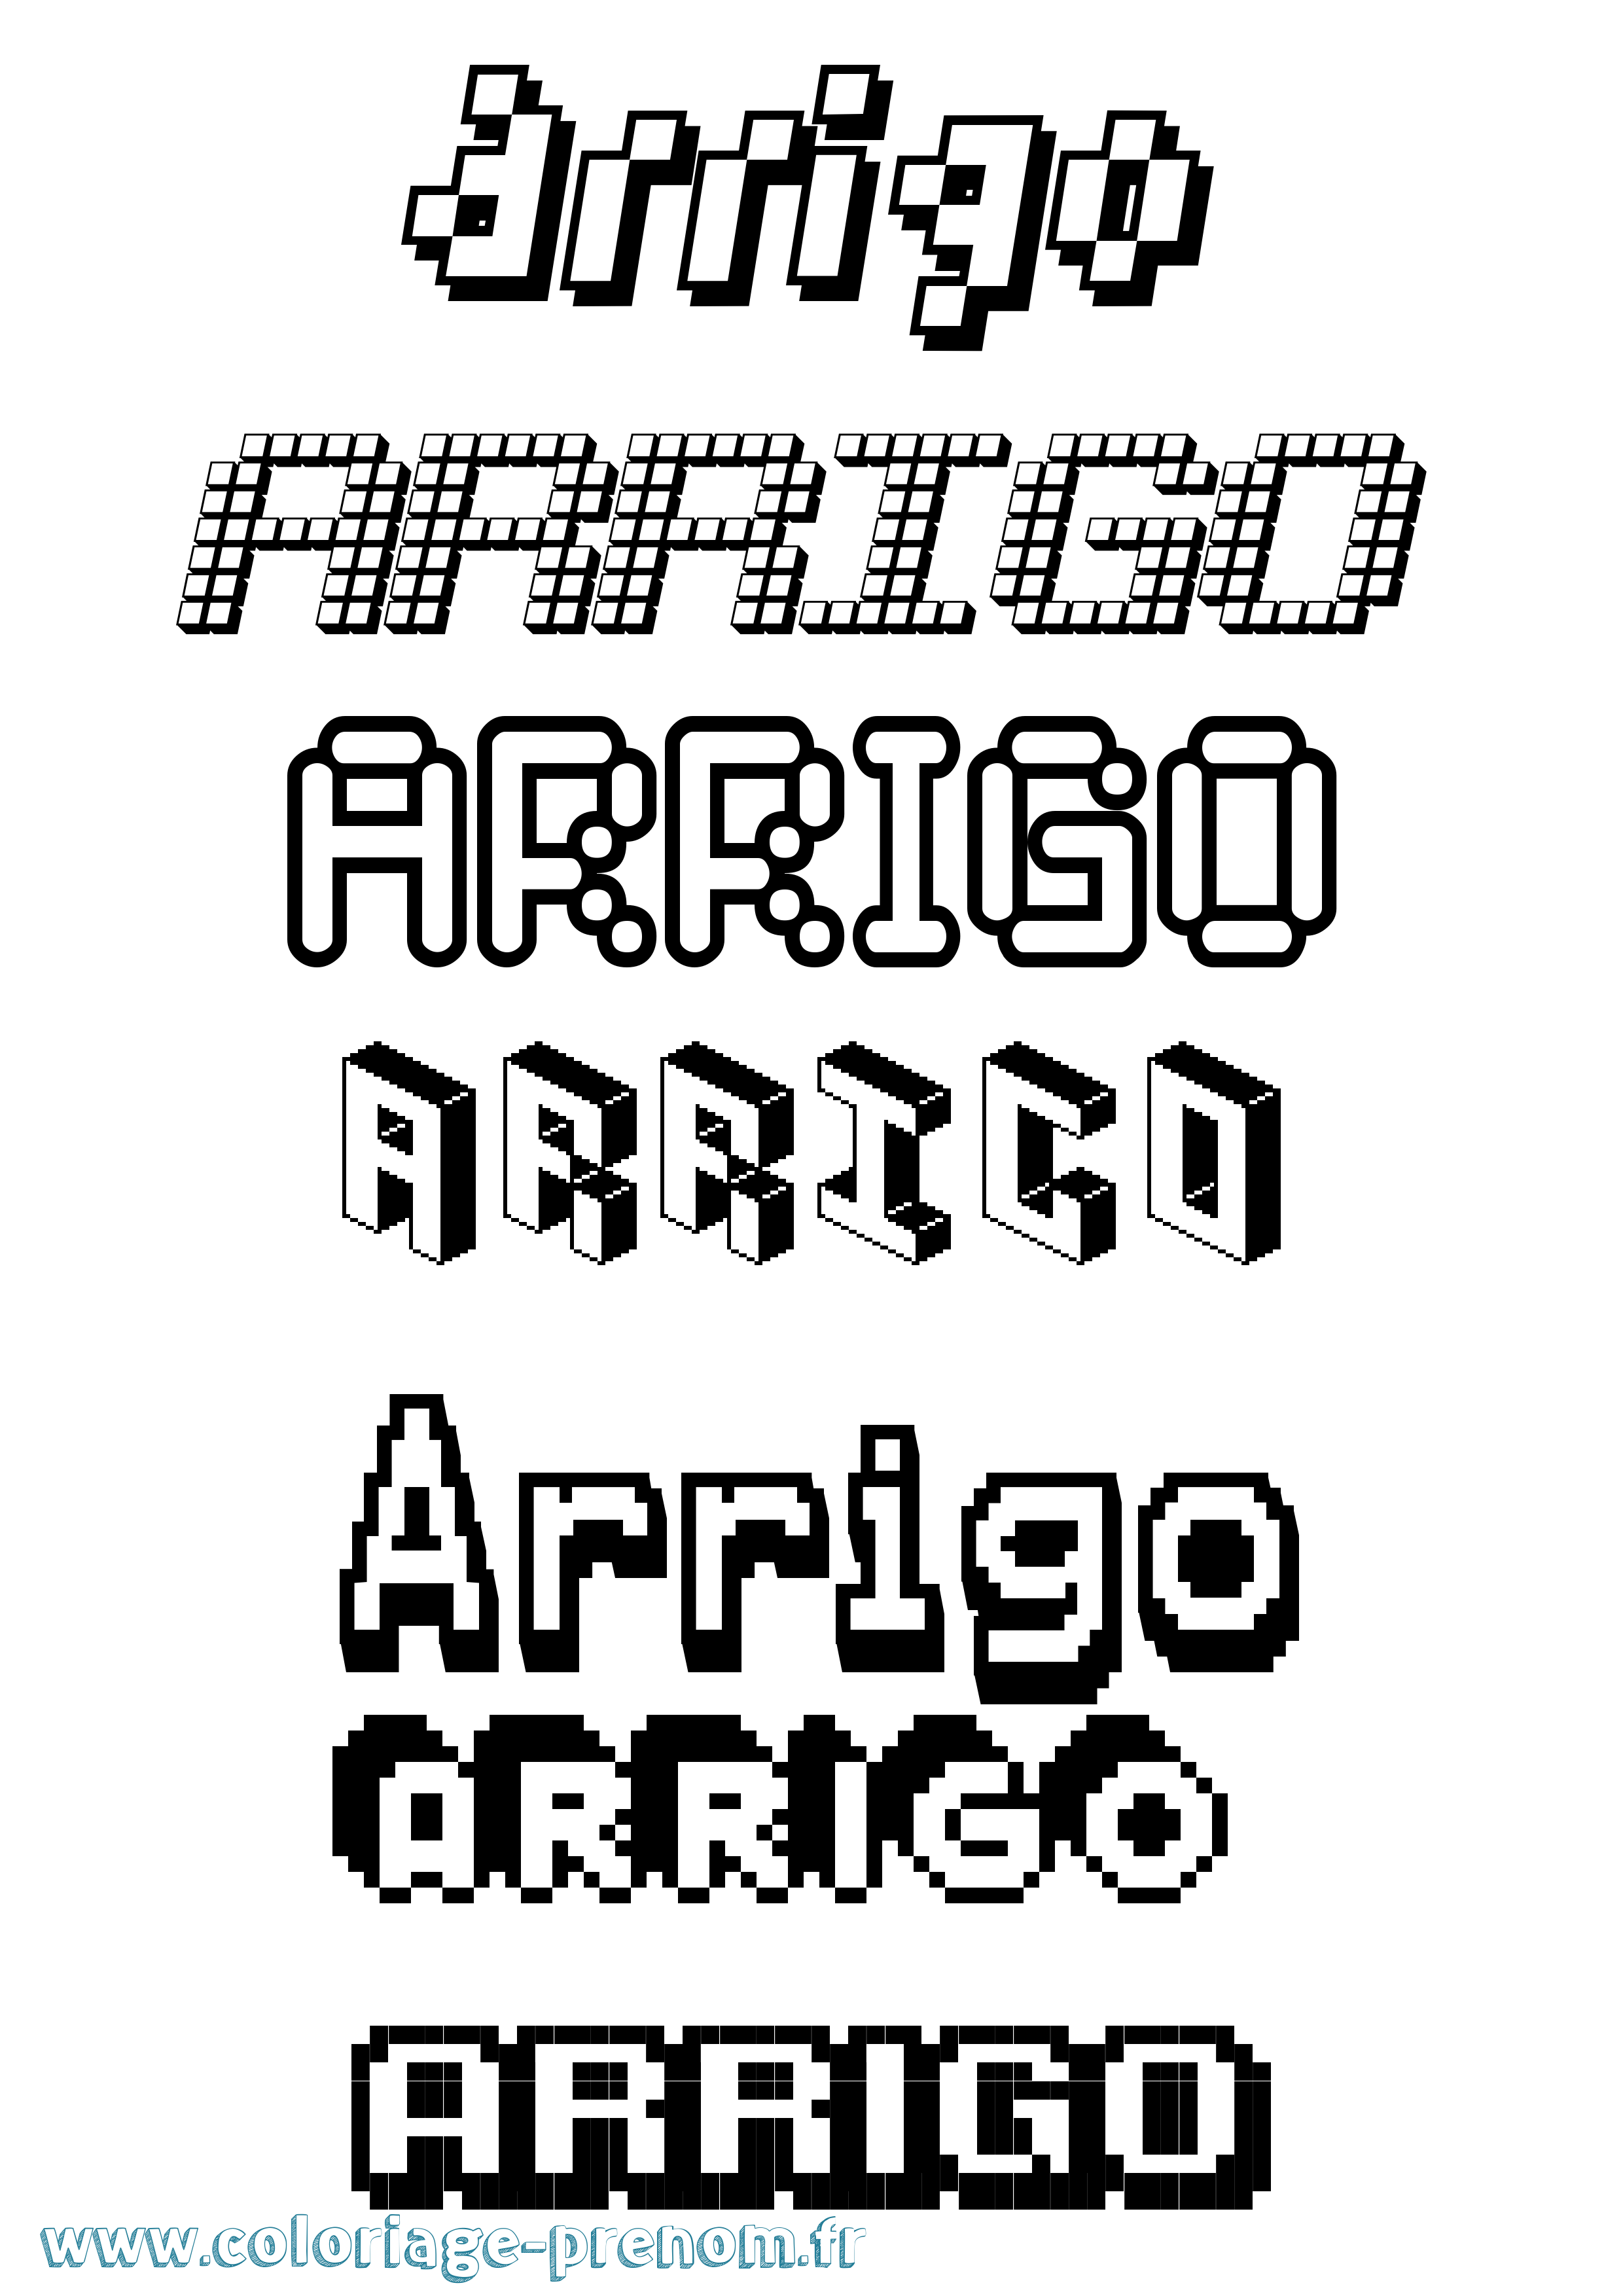 Coloriage prénom Arrigo Pixel